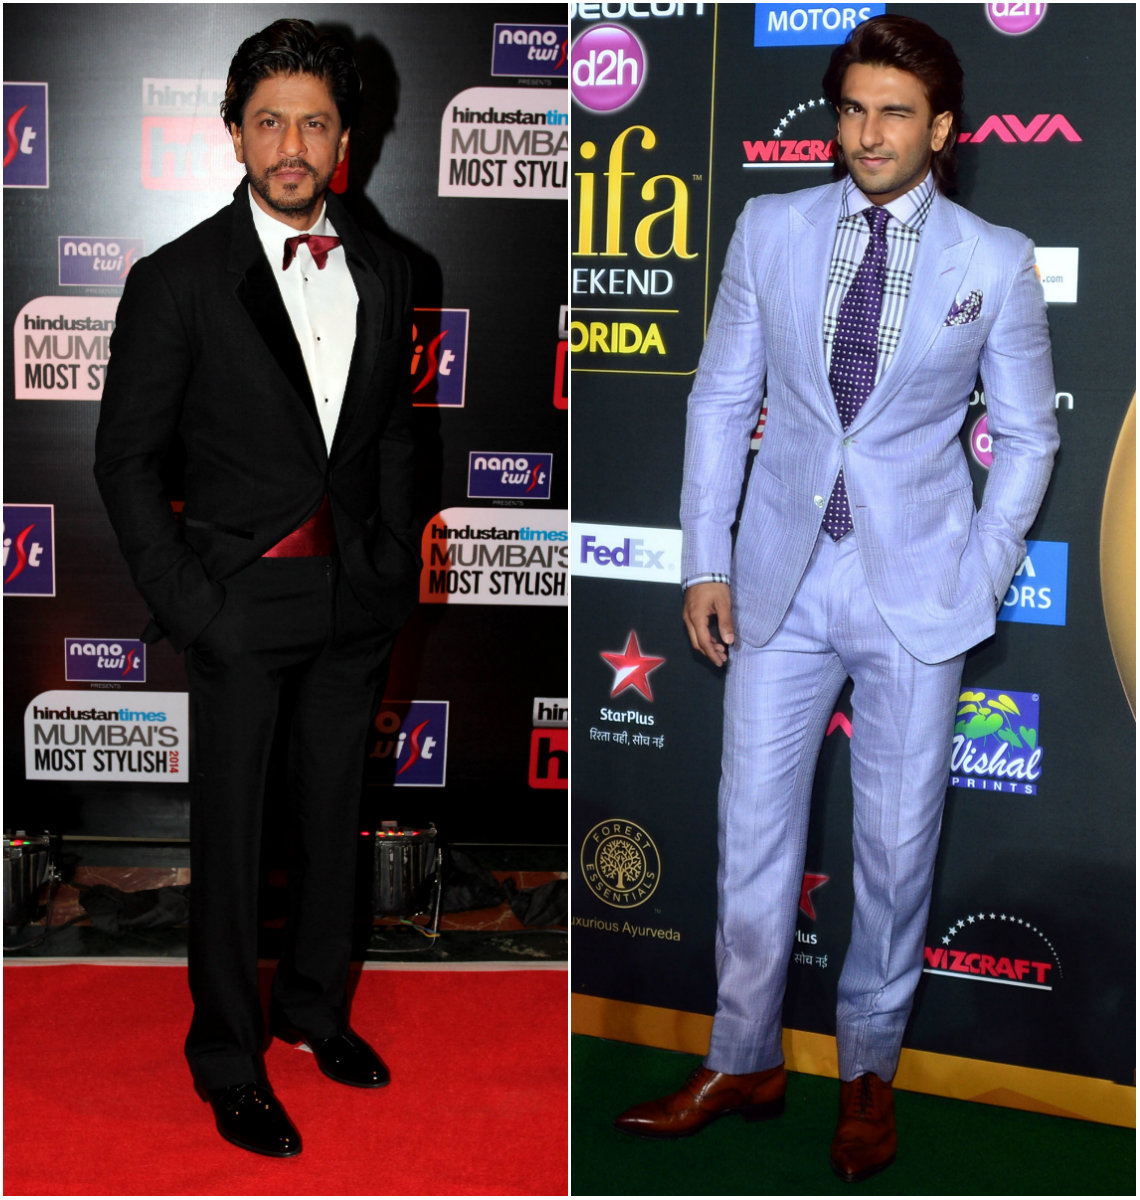 Shah Rukh Khan and Ranveer Singh in suits